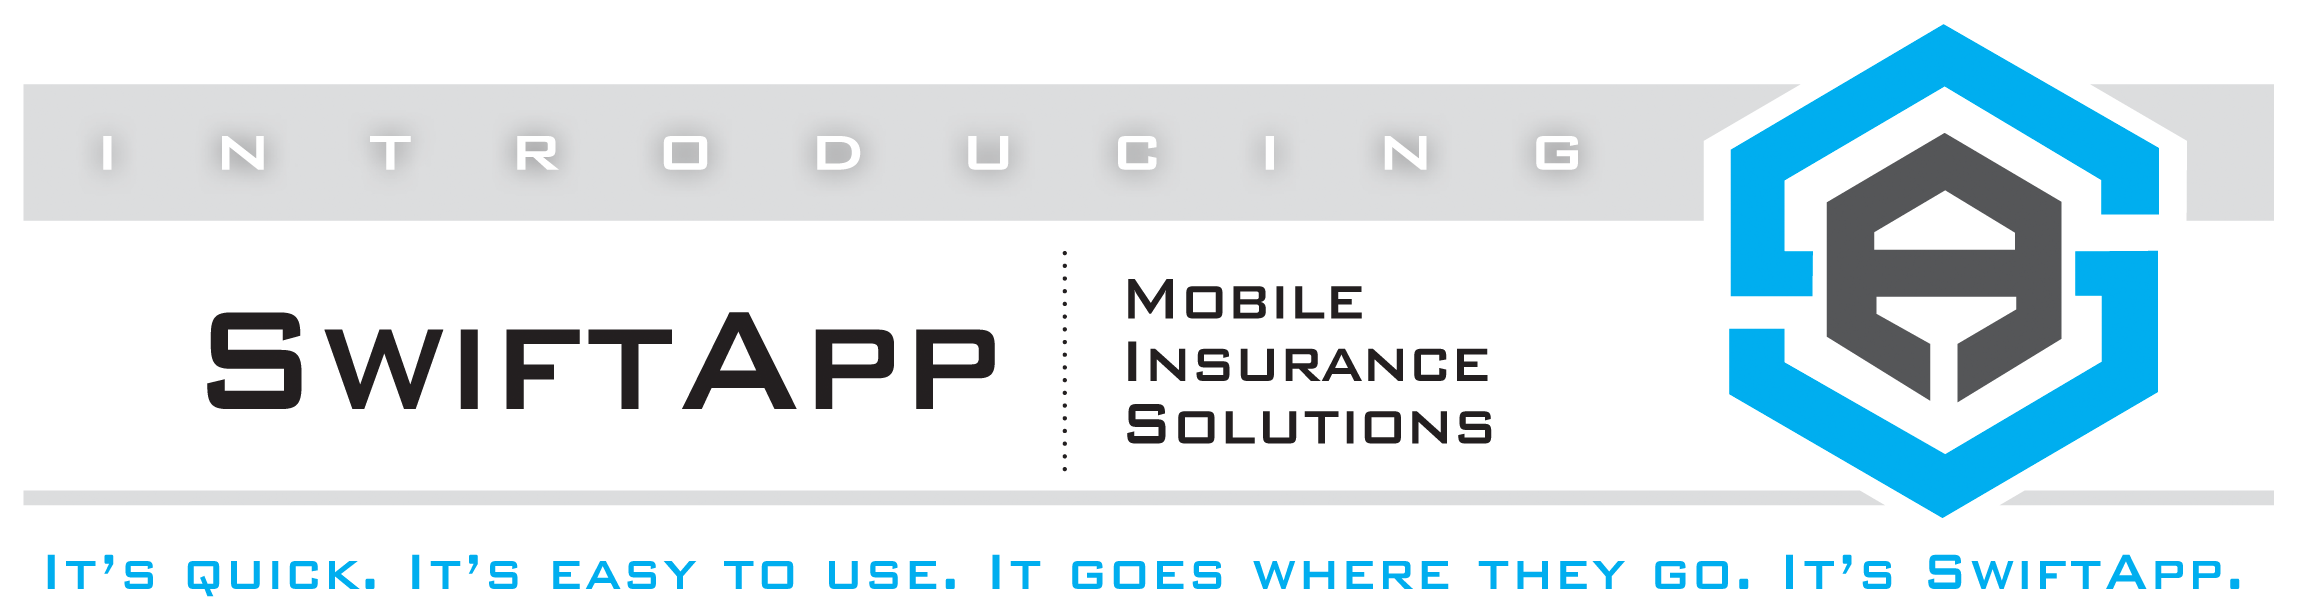 swiftapp mobile insurance solutions